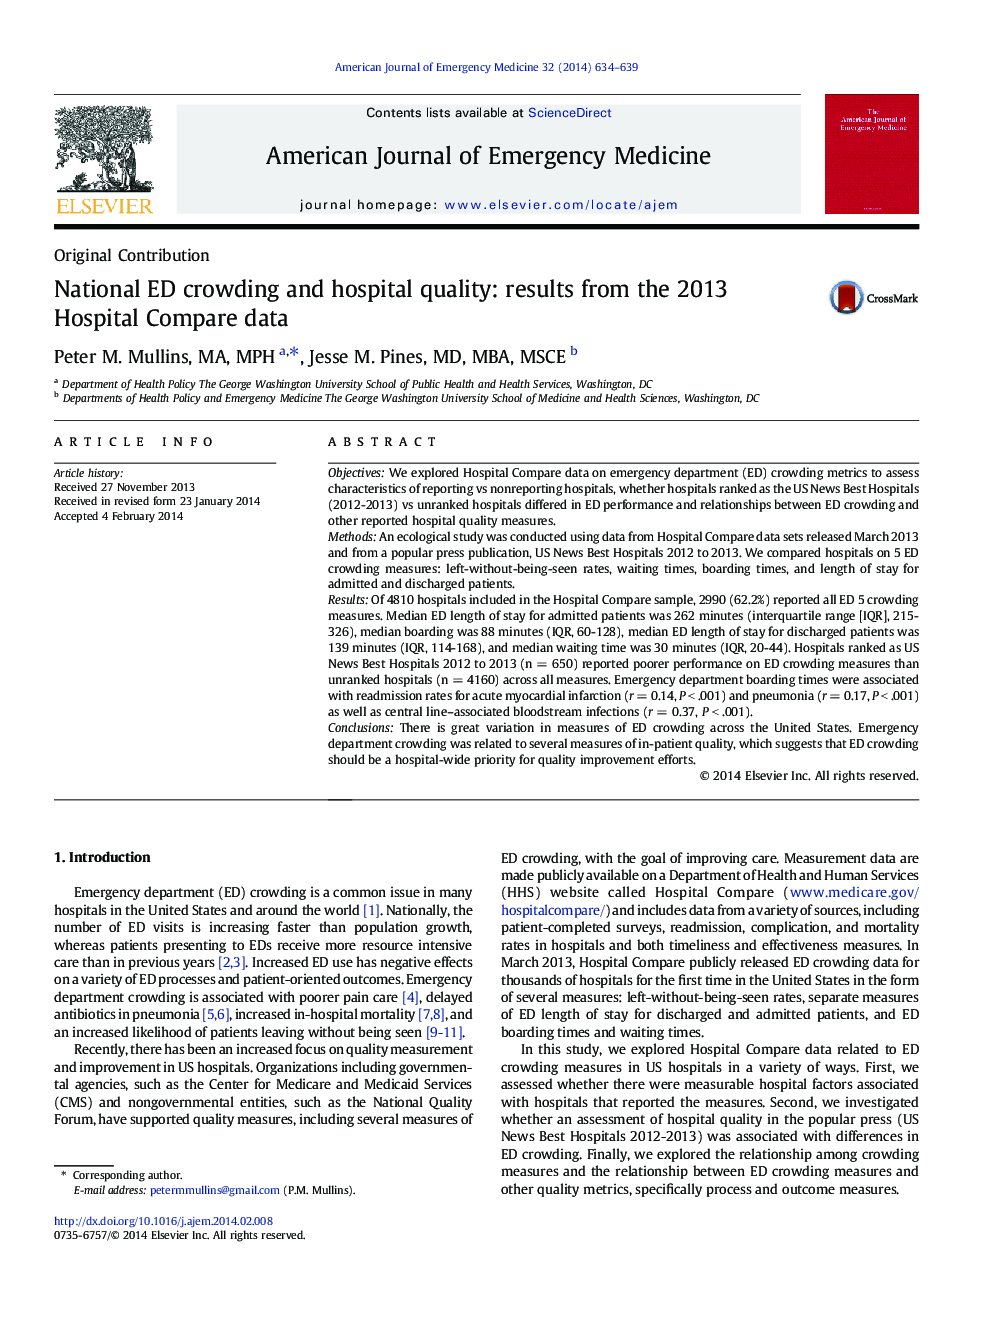 انحراف استاندارد ملی و کیفیت بیمارستان: نتایج حاصل از مقایسه اطلاعات بیمارستان 2013 